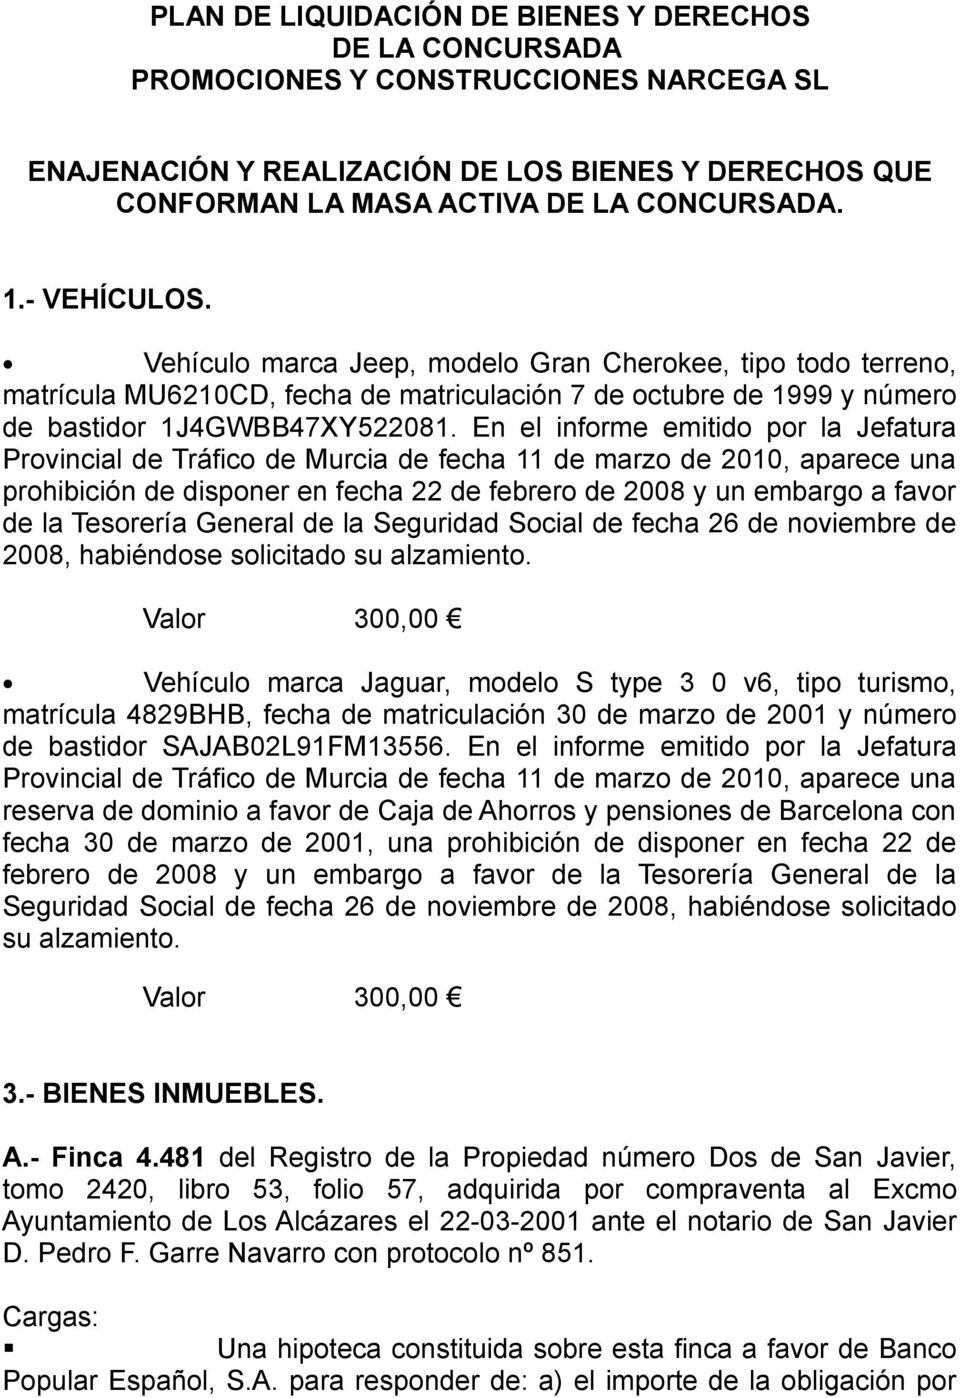 En el informe emitido por la Jefatura Provincial de Tráfico de Murcia de fecha 11 de marzo de 2010, aparece una prohibición de disponer en fecha 22 de febrero de 2008 y un embargo a favor de la